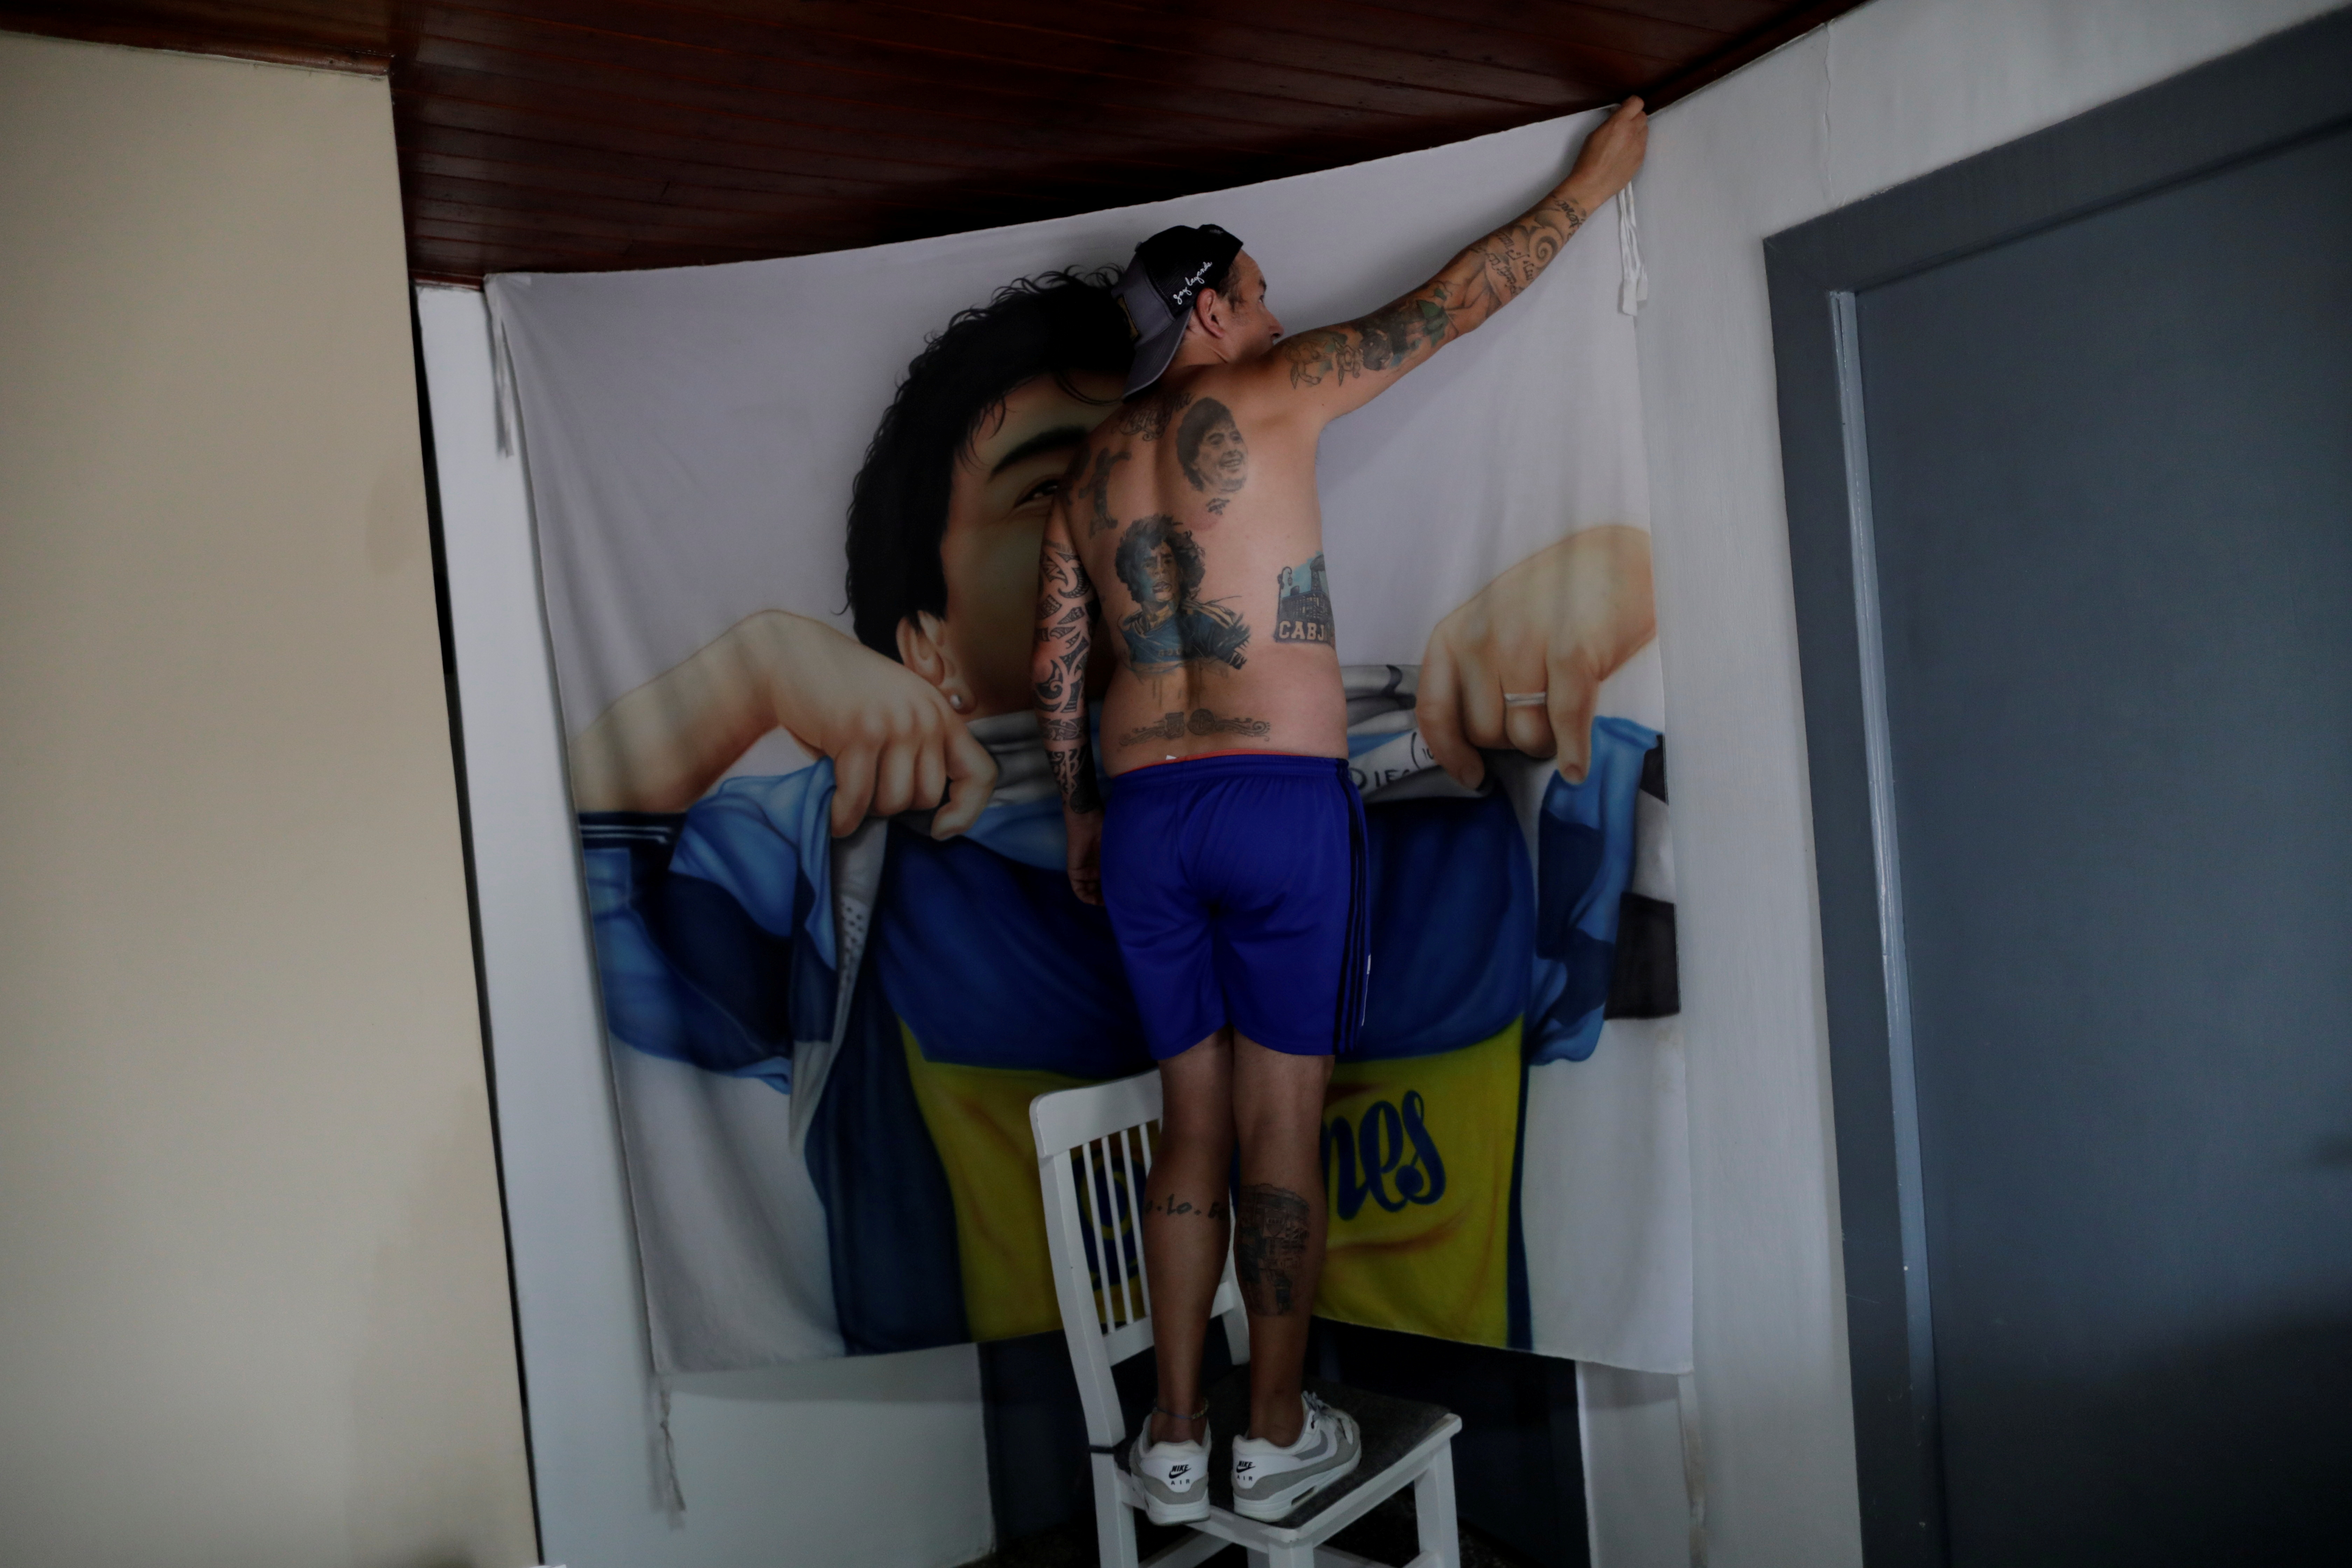 Luciano Zarate, mostró sus tatuajes que lleva en su cuerpo y una bandera con la imagen del "Diez" - REUTERS